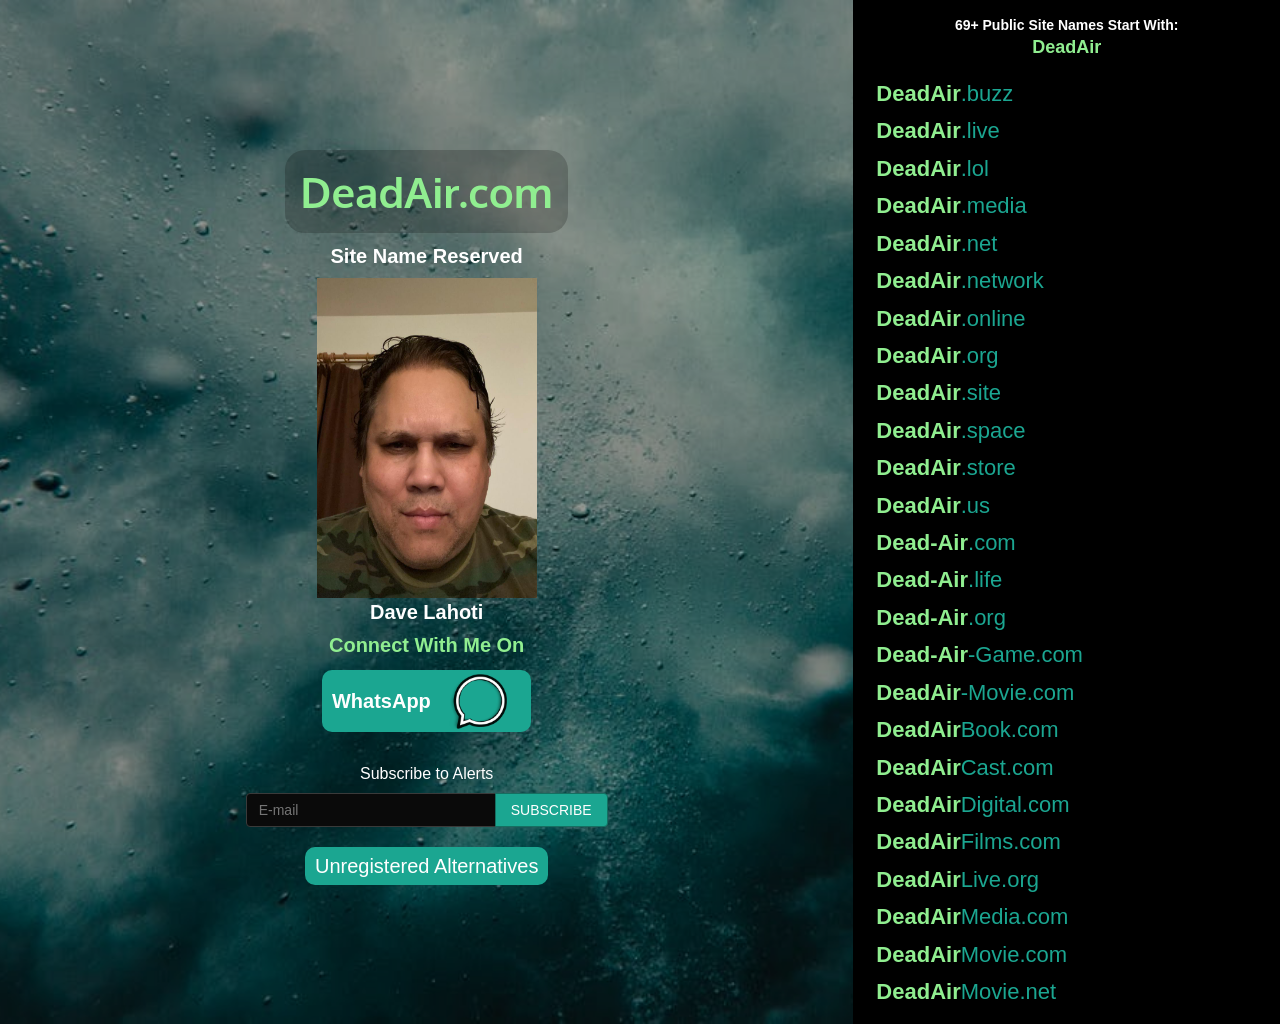 deadair.com